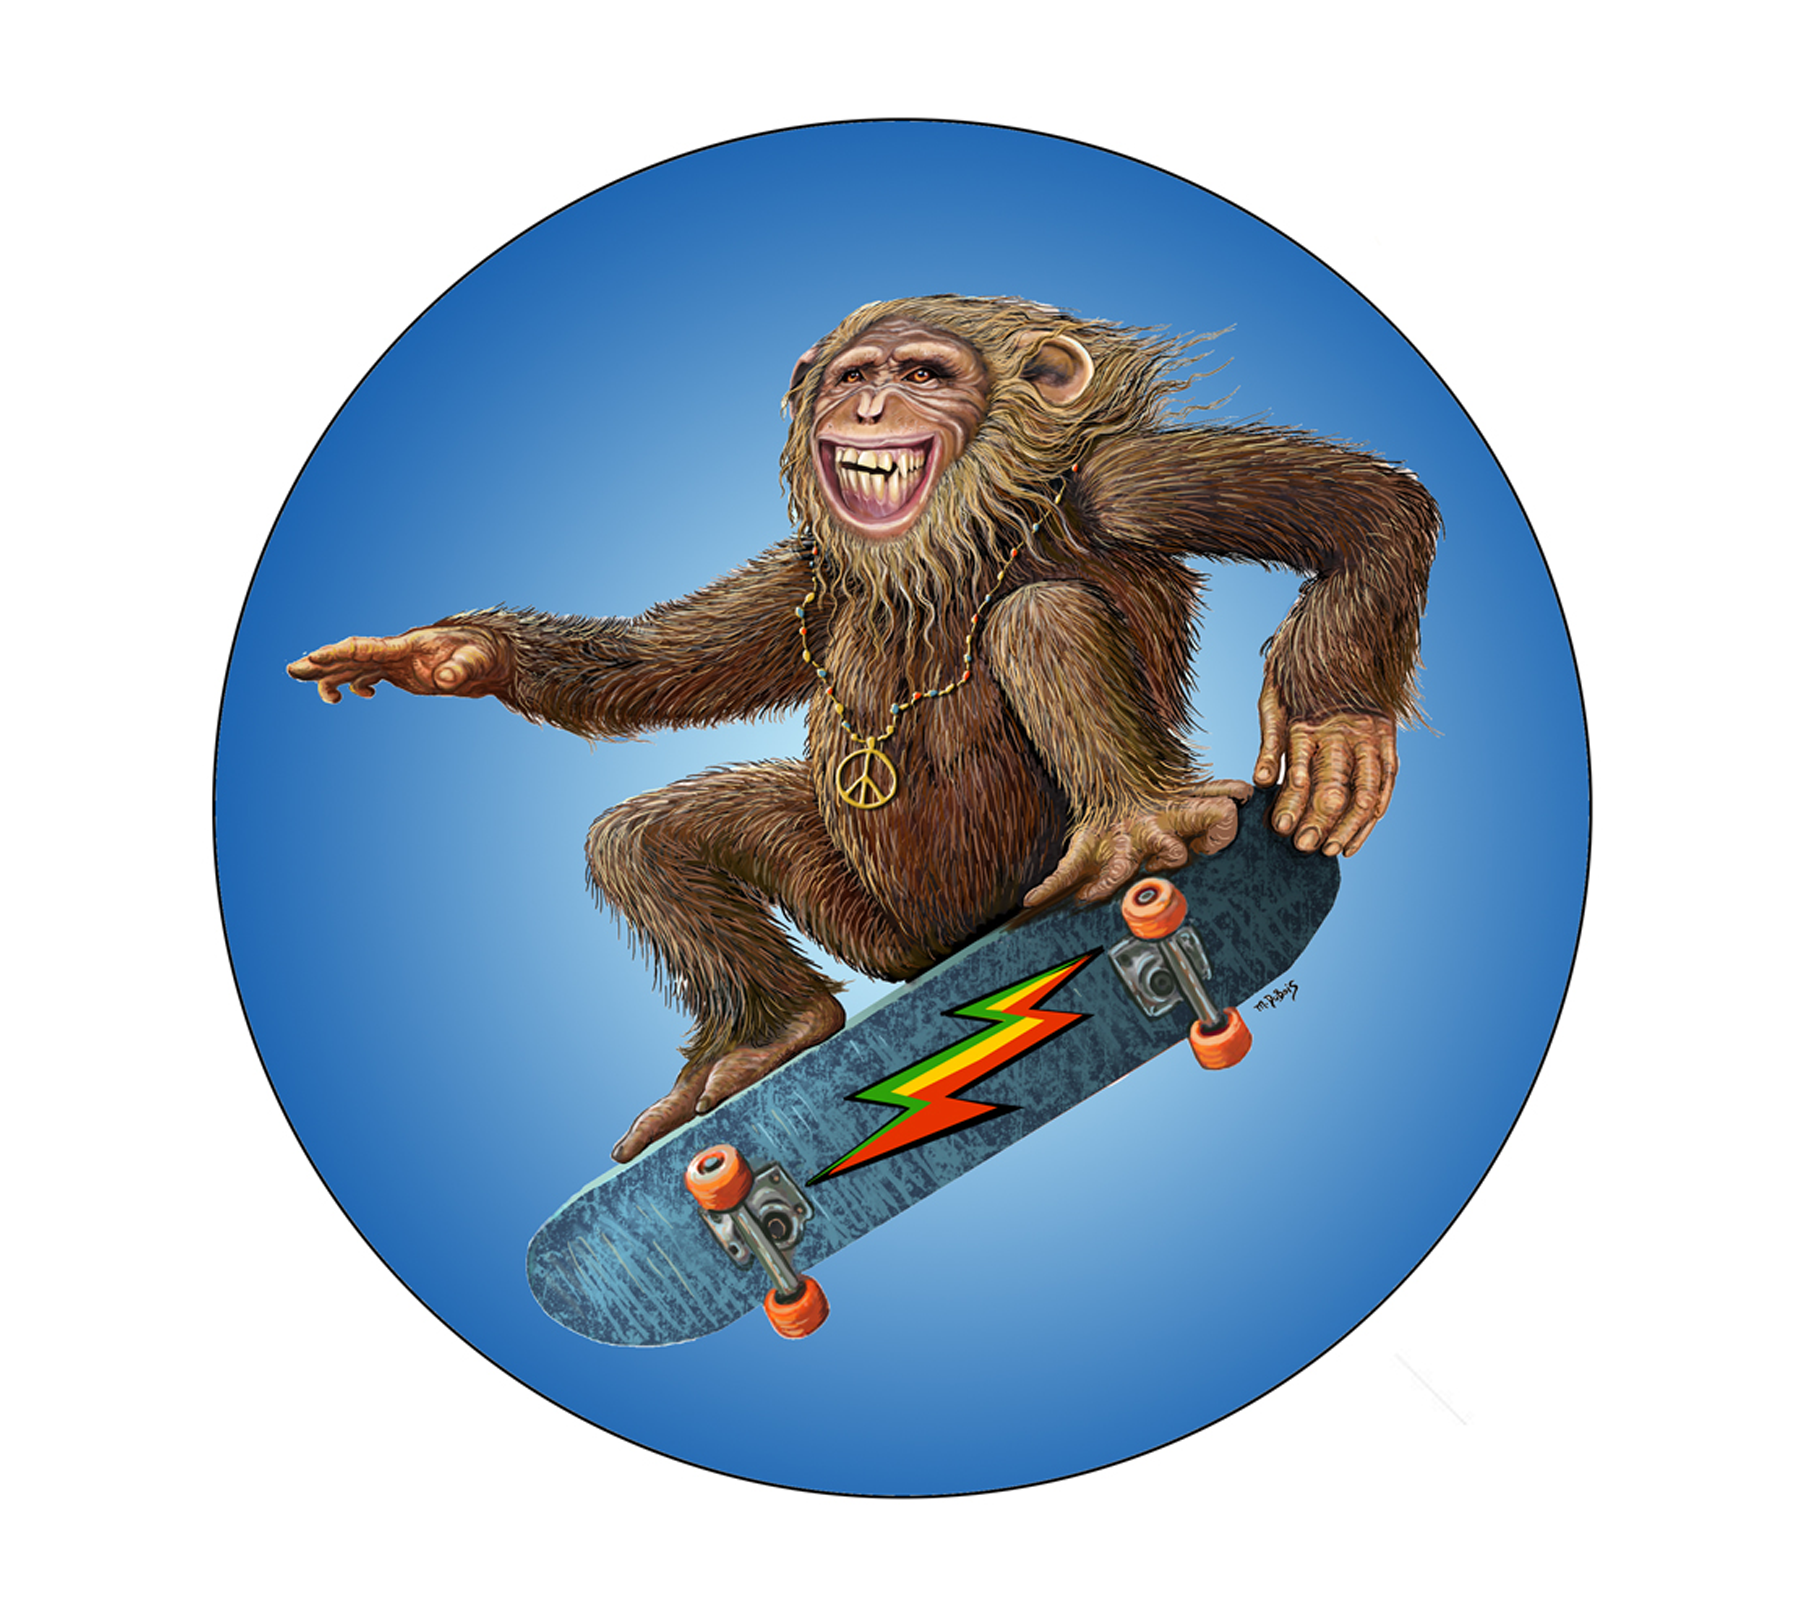 DS-577 // Skateboard Monkey